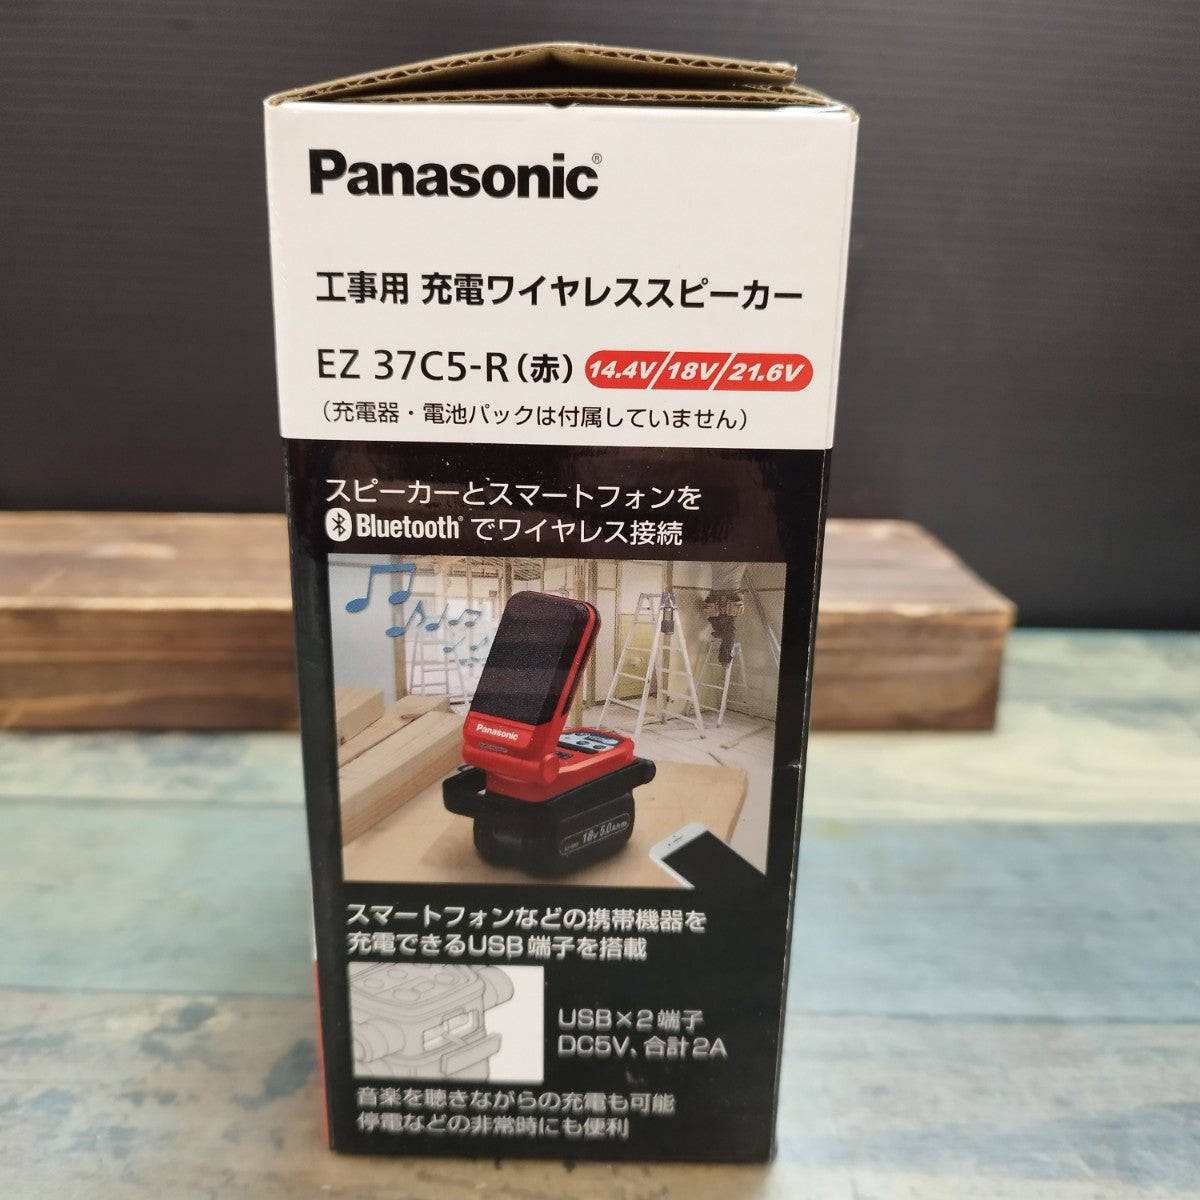 パナソニック EZ37C5-R 赤 bluetoothコンパクトワイヤレススピーカー